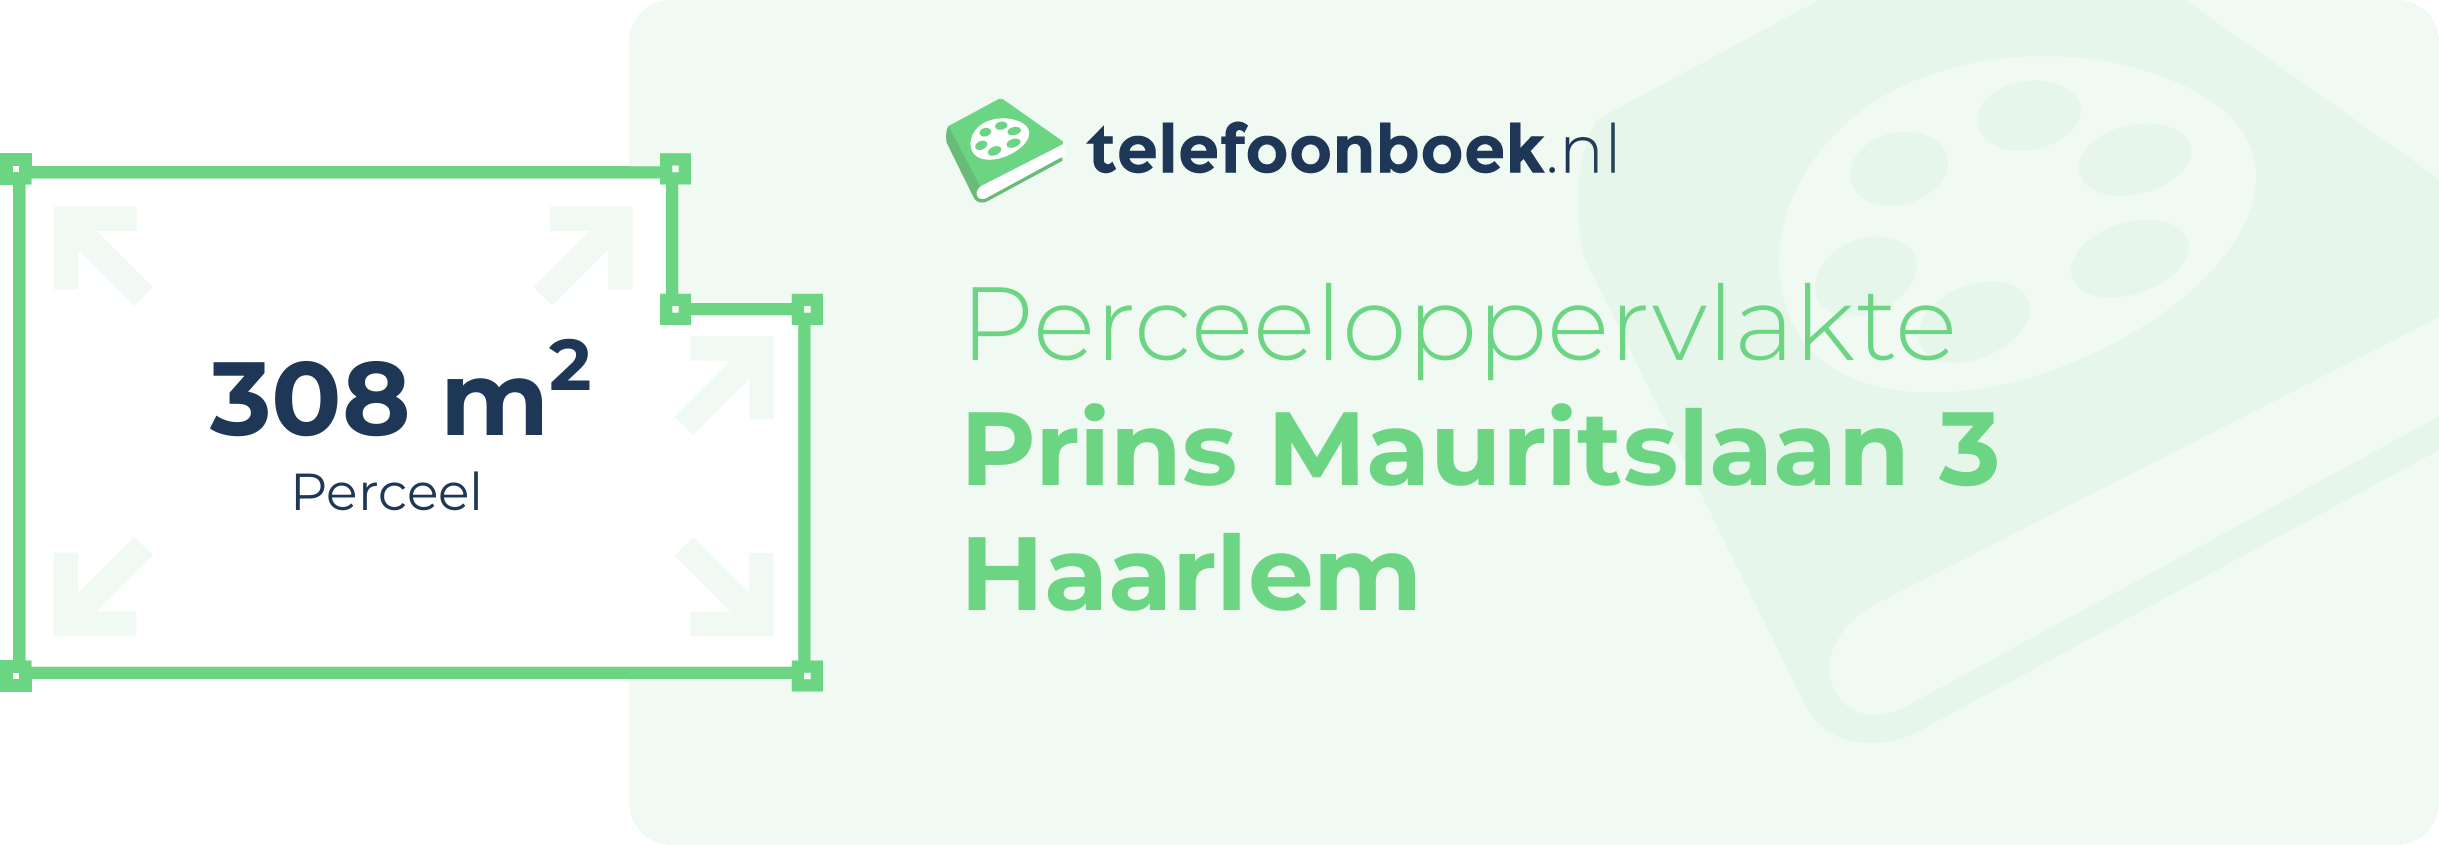 Perceeloppervlakte Prins Mauritslaan 3 Haarlem